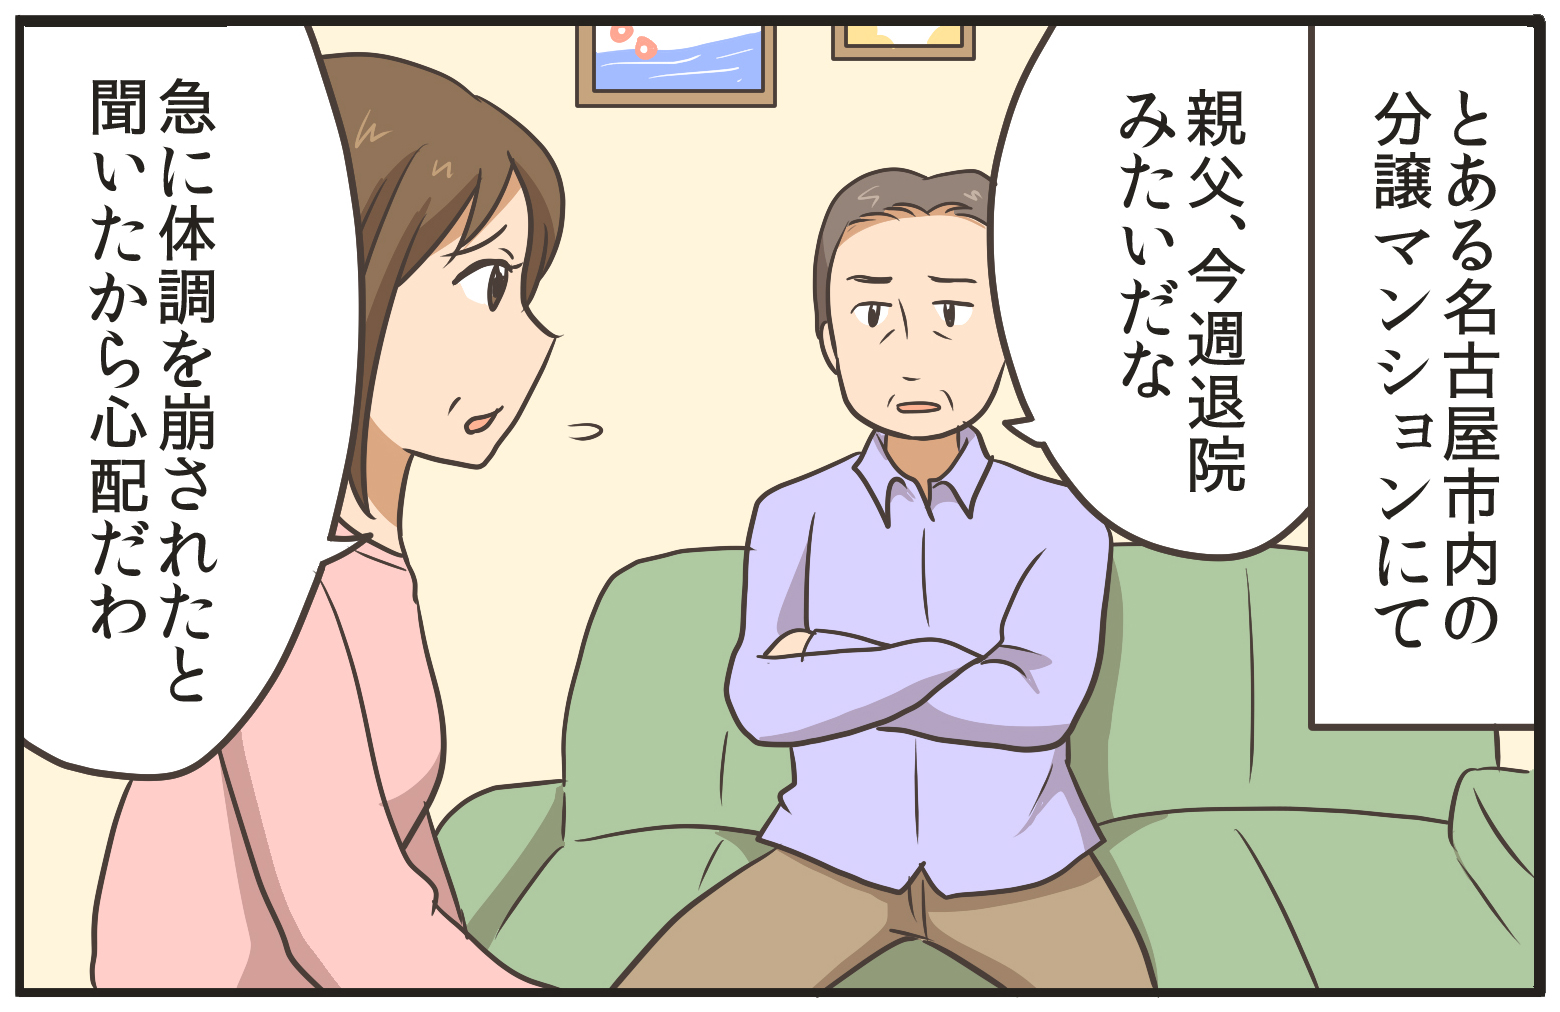 とある名古屋市内の分譲マンションにて。親父、今週退院みたいだな。急に体調を崩されたと聞いたから心配だわ。